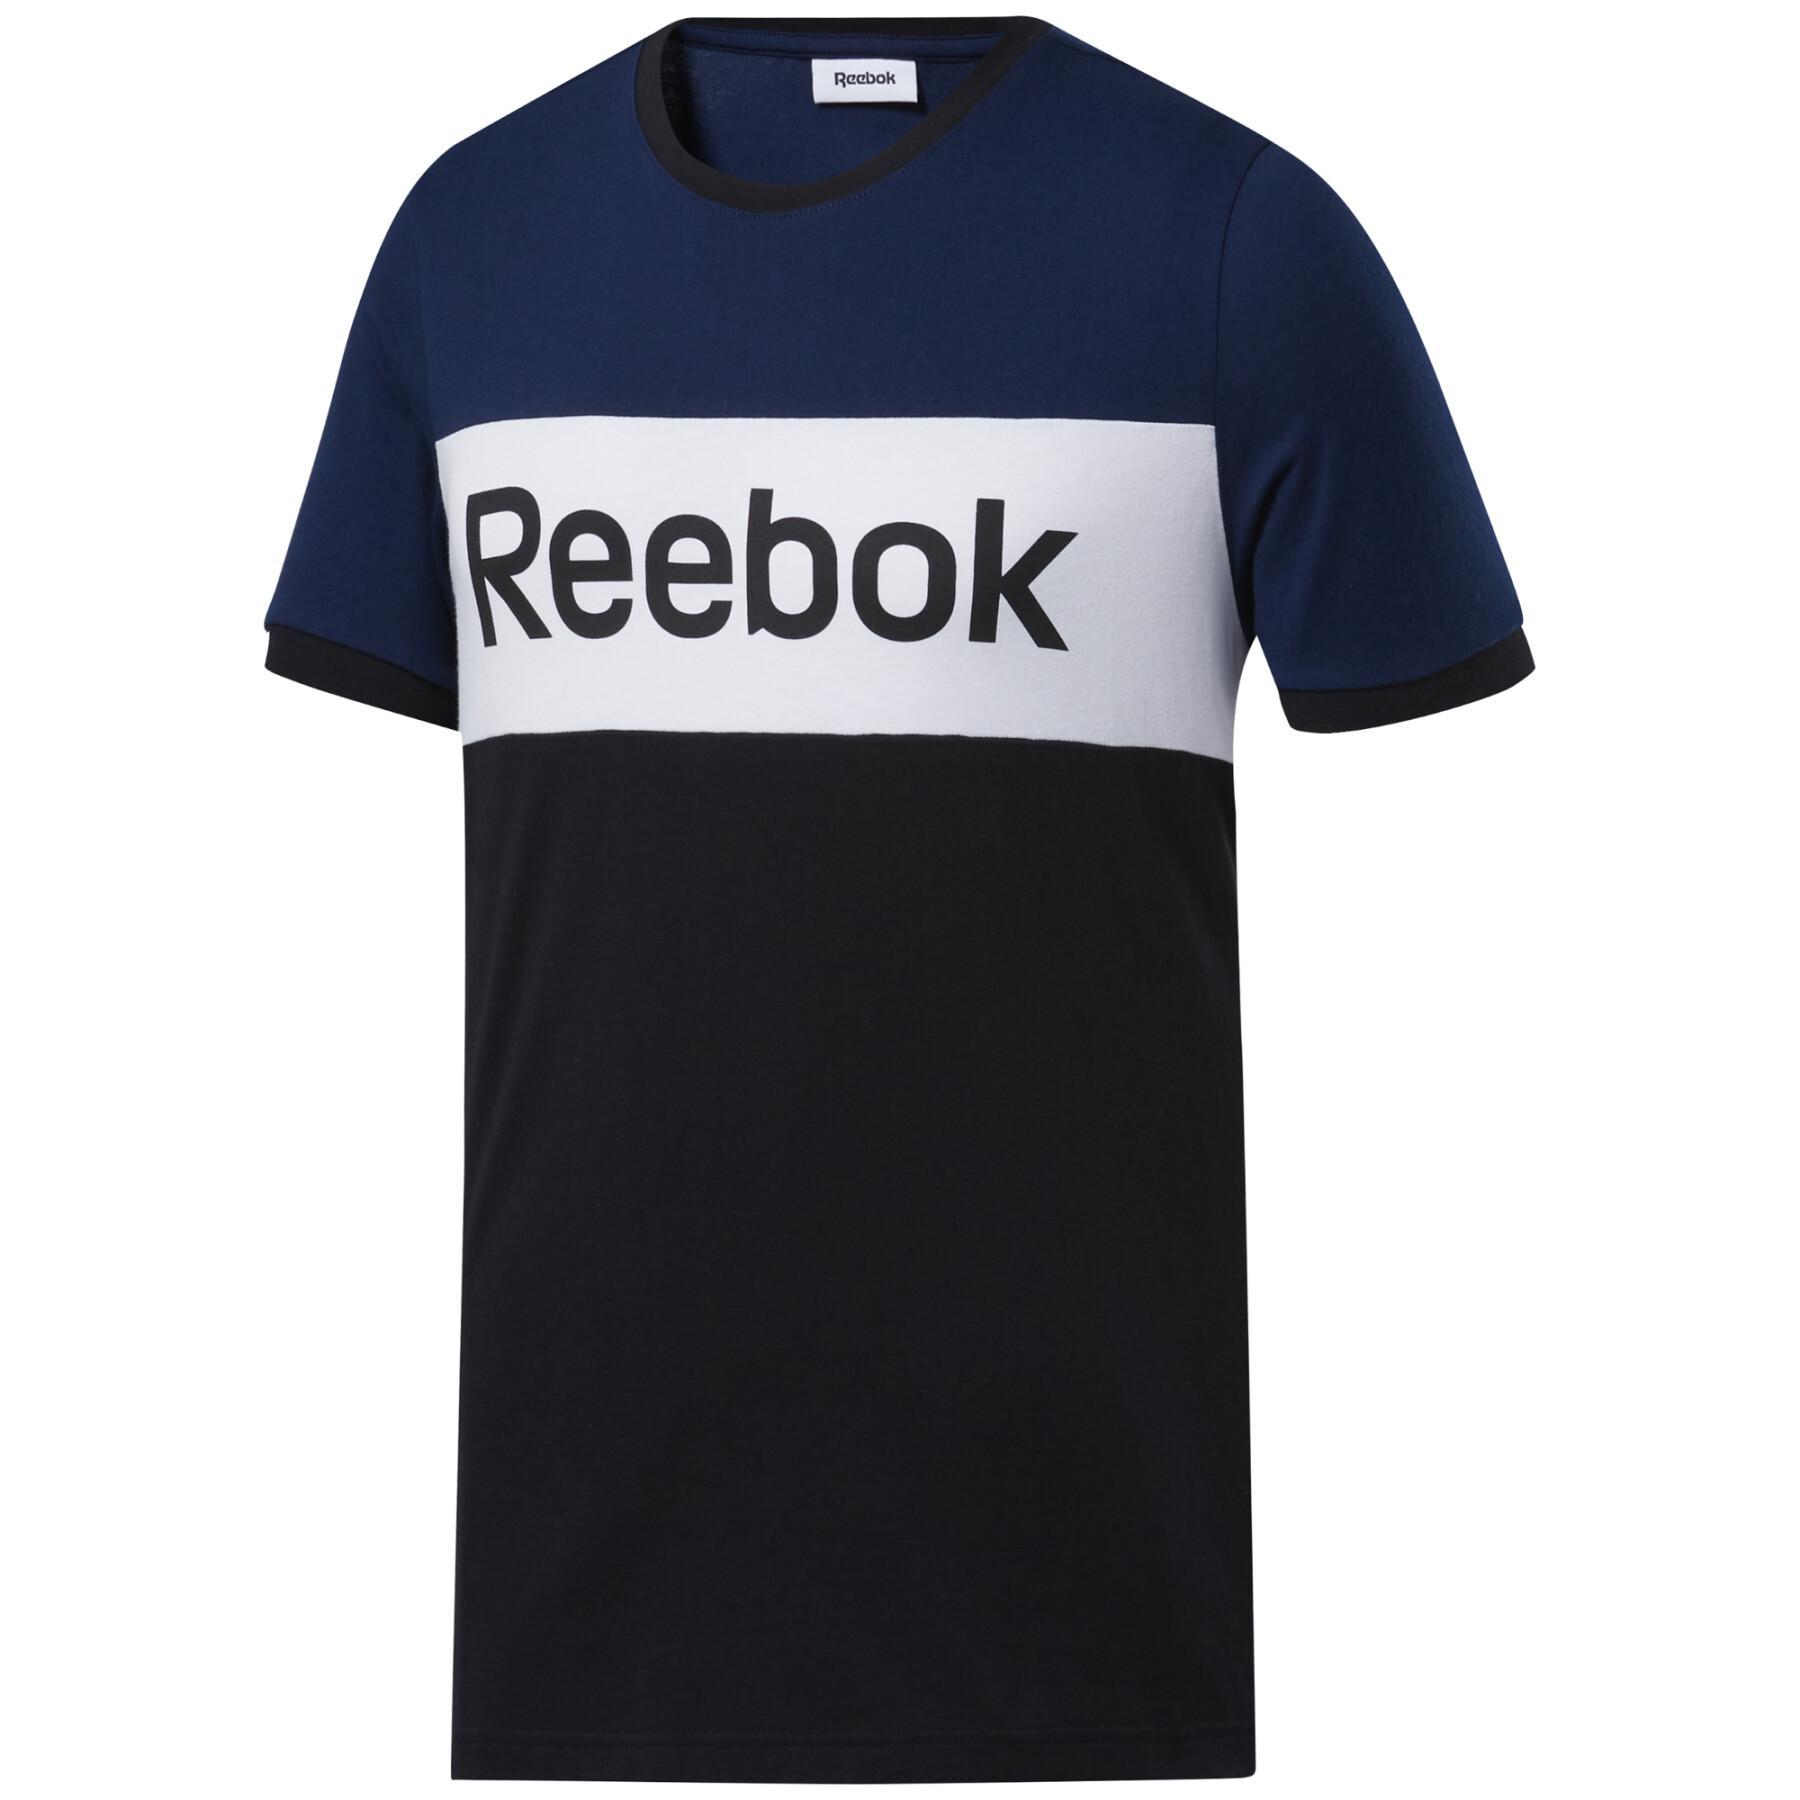 T-shirt Reebok Linear Linear Logo Blocked